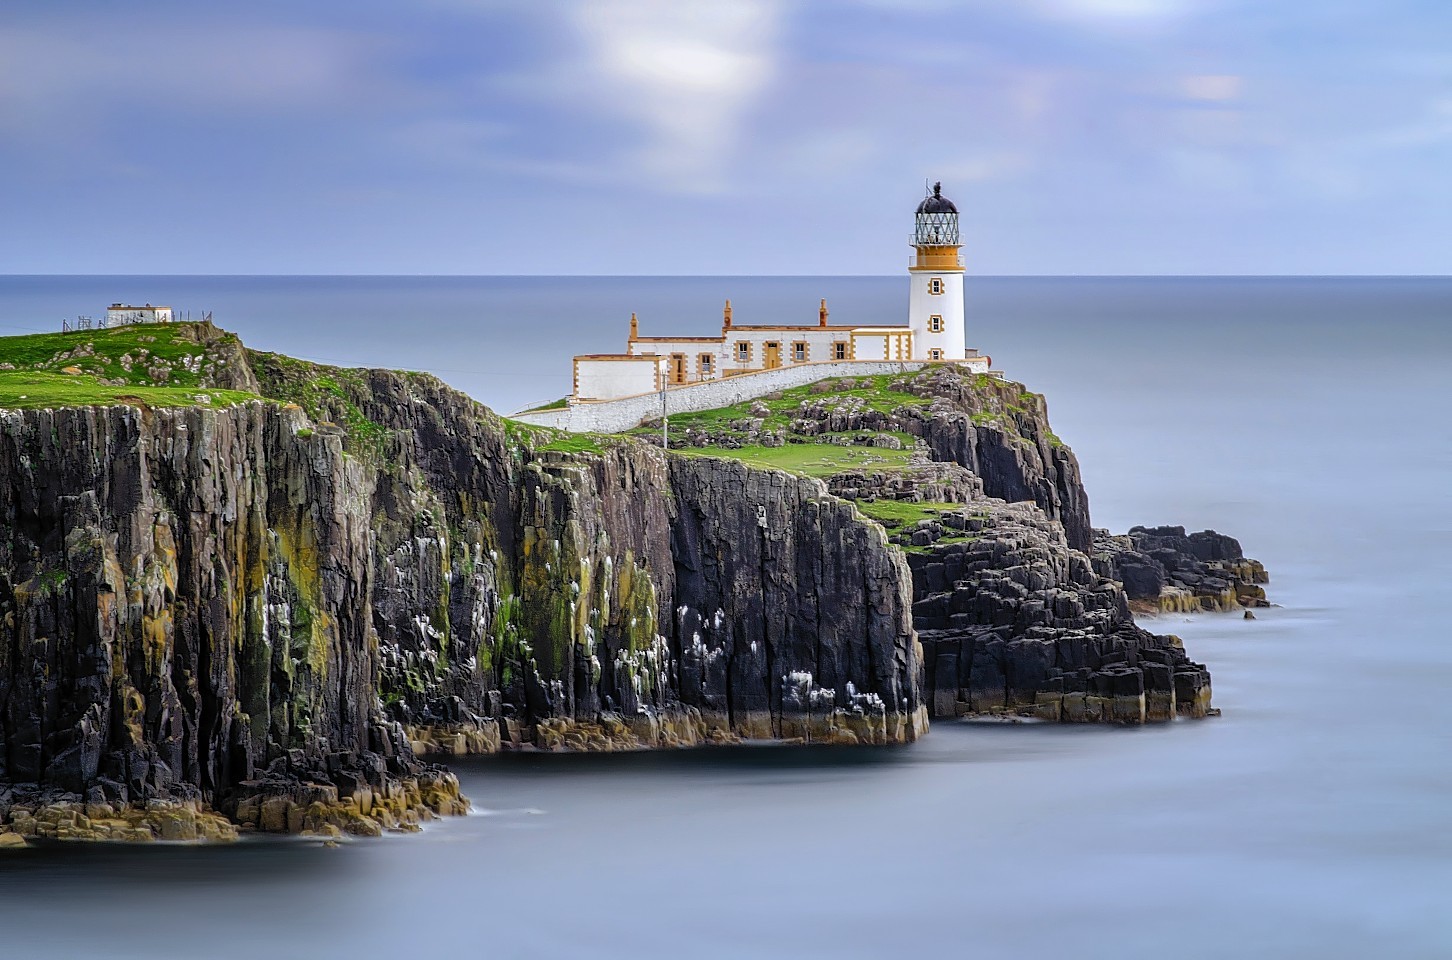 Lighthouse on Neist Point cliffs, Isle of Skye, Scotland